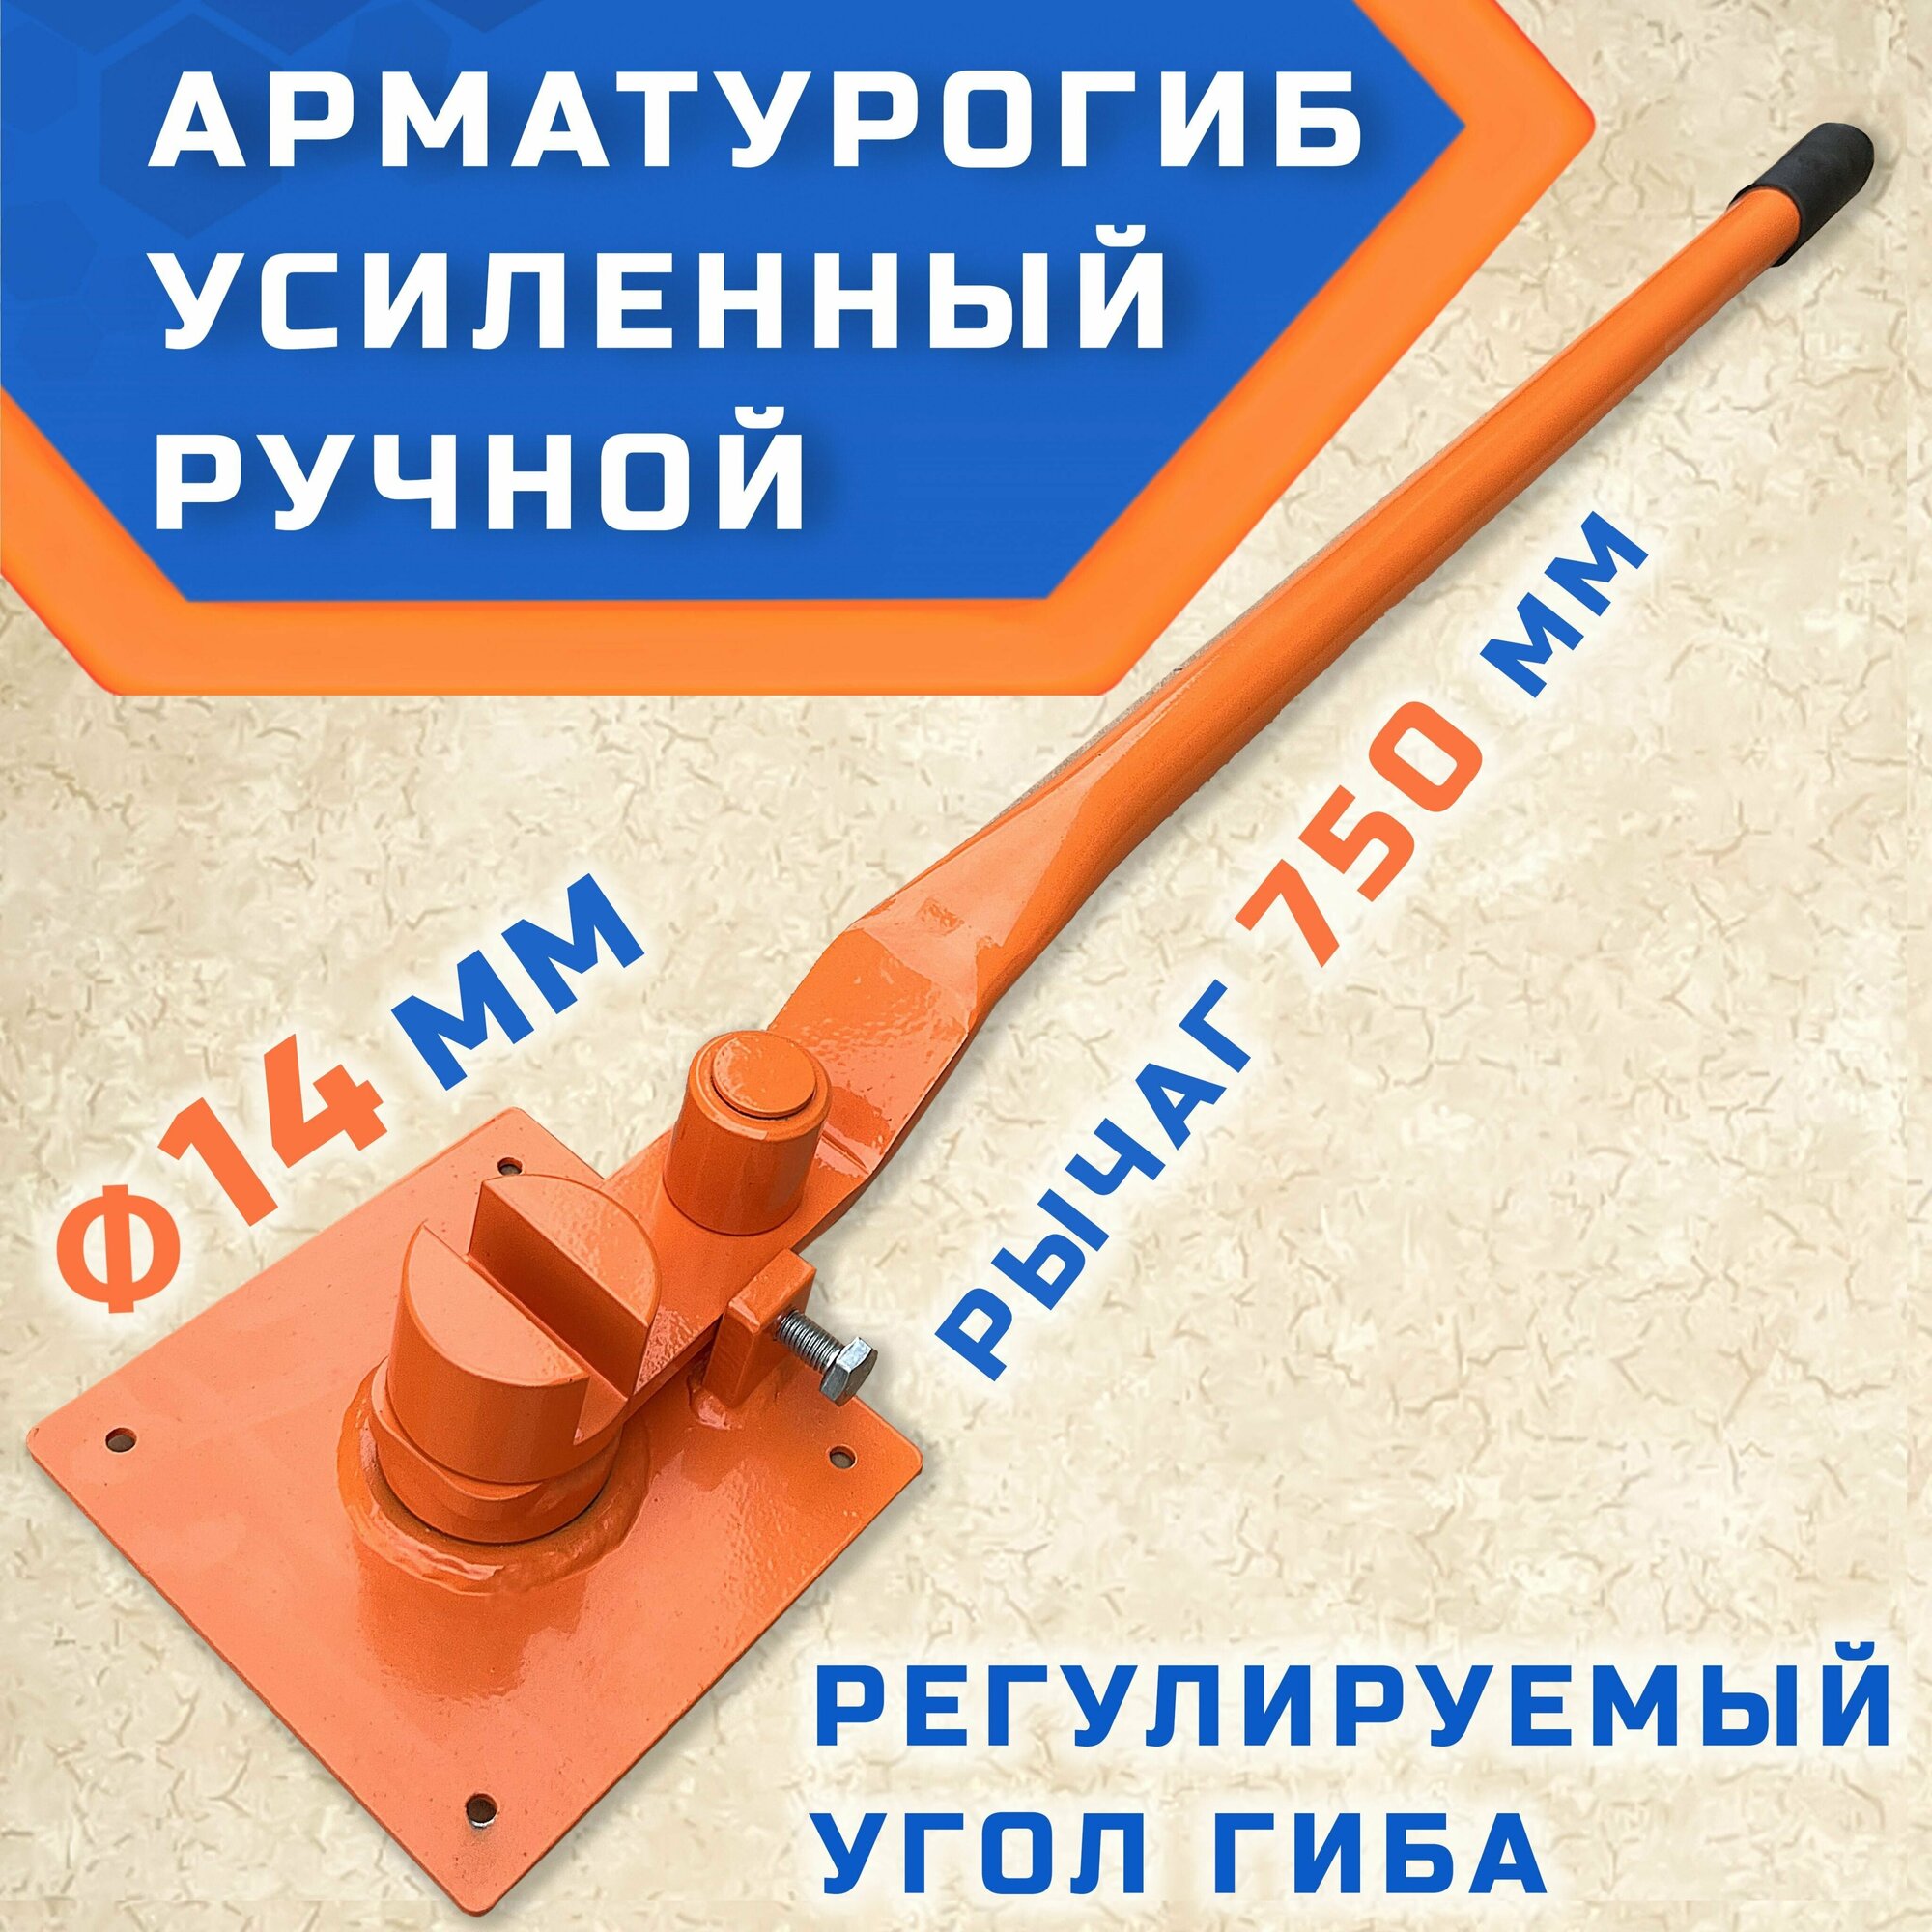 Арматурогиб гибман АМГ-14 ПАЗ (плавный гиб), ручной станок для гибки арматуры диаметром до 14 мм рифлёной и 16 мм гладкой — купить в интернет-магазине по низкой цене на Яндекс Маркете